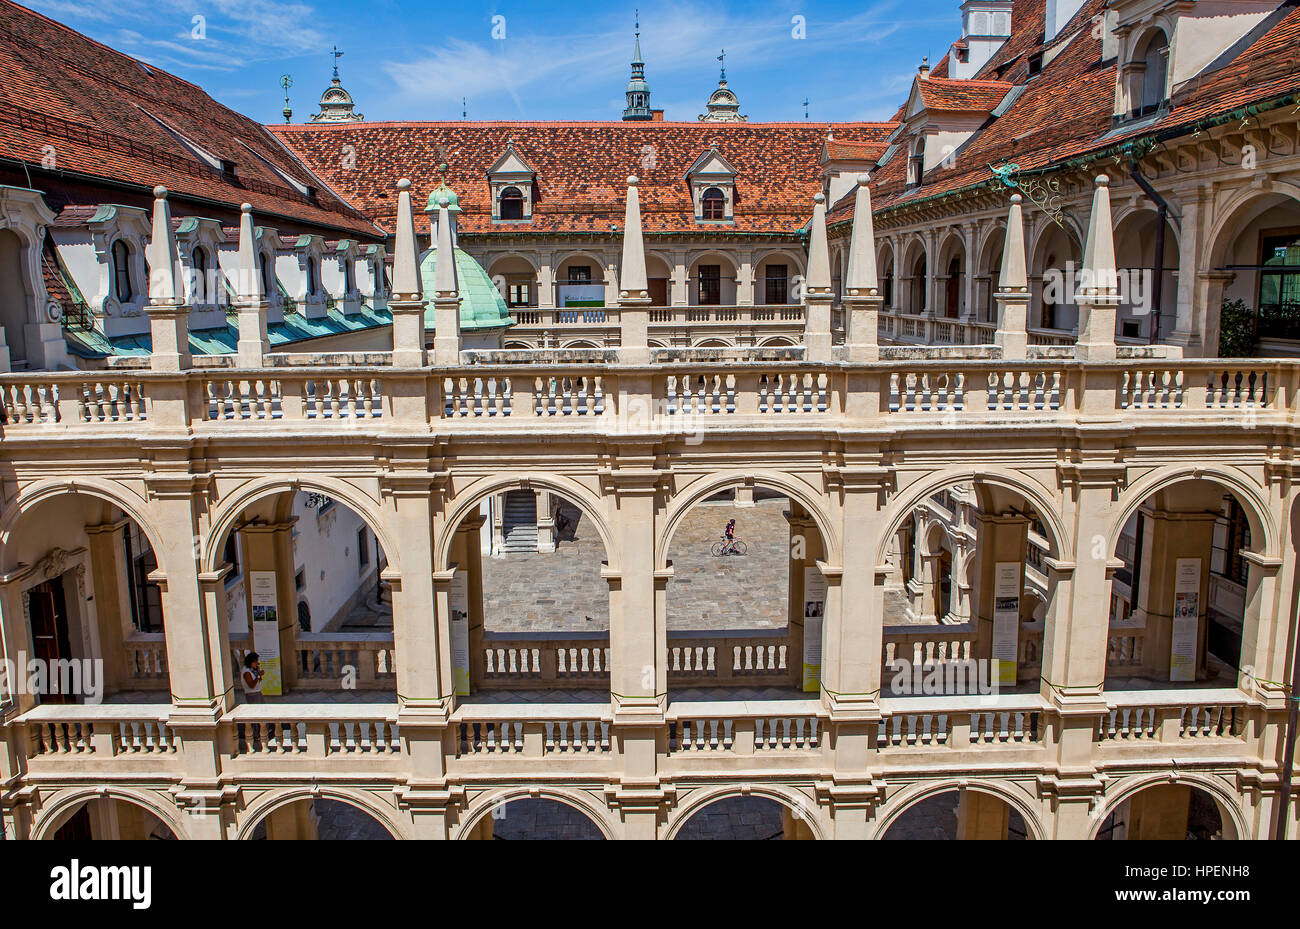 courtyard of Landhaus, Landhausshof, Graz, Austria Stock Photo